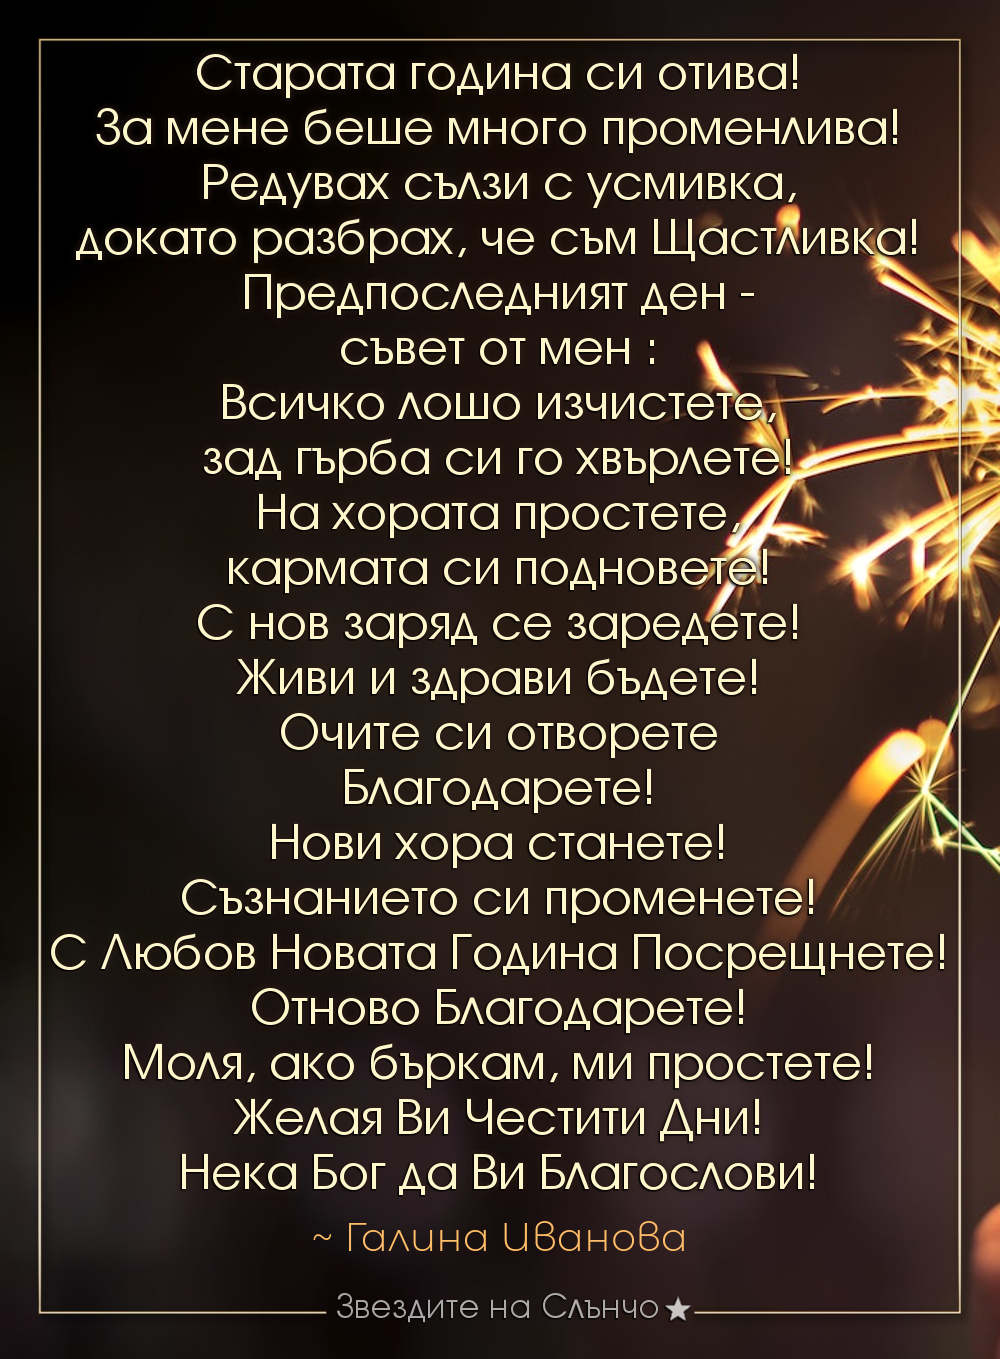 Старата година си отива 2019 - Честита нова година 2020 ~ Галина Иванова, звездите на Слънчо